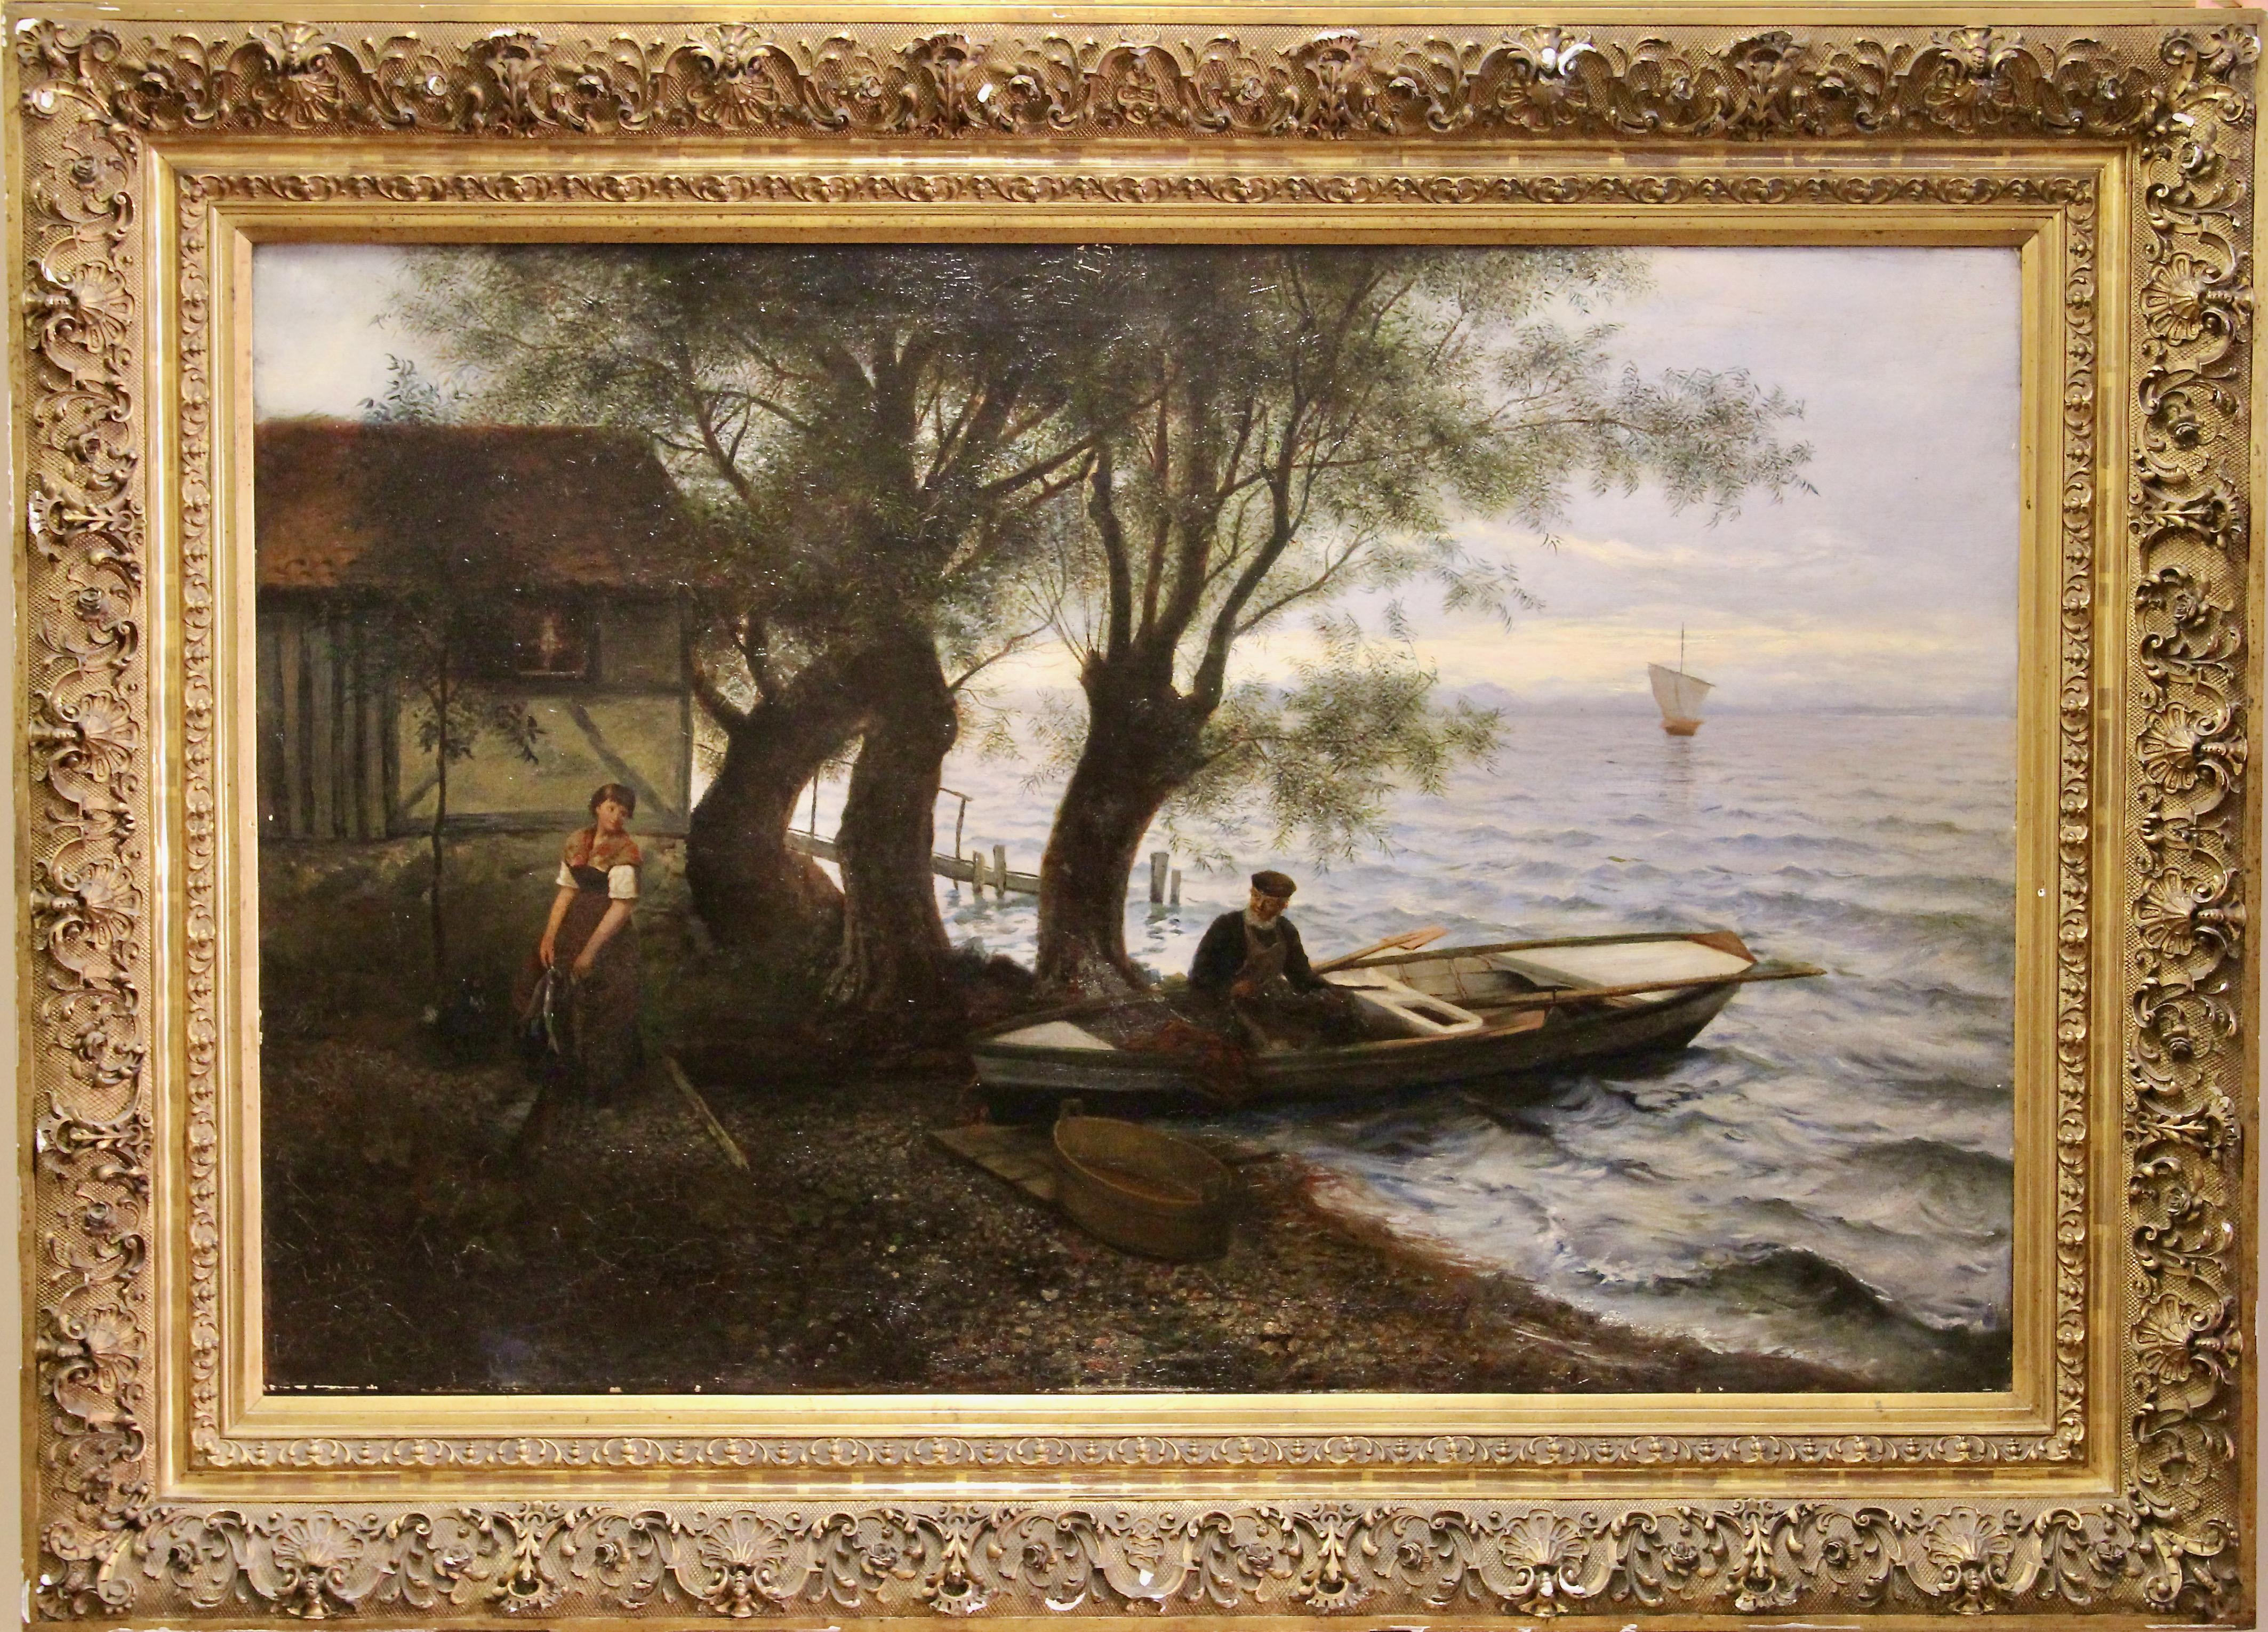 Landscape Painting Unknown - Peinture à l'huile ancienne, paysage marin atmosphérique. 19ème siècle. Huile sur toile.